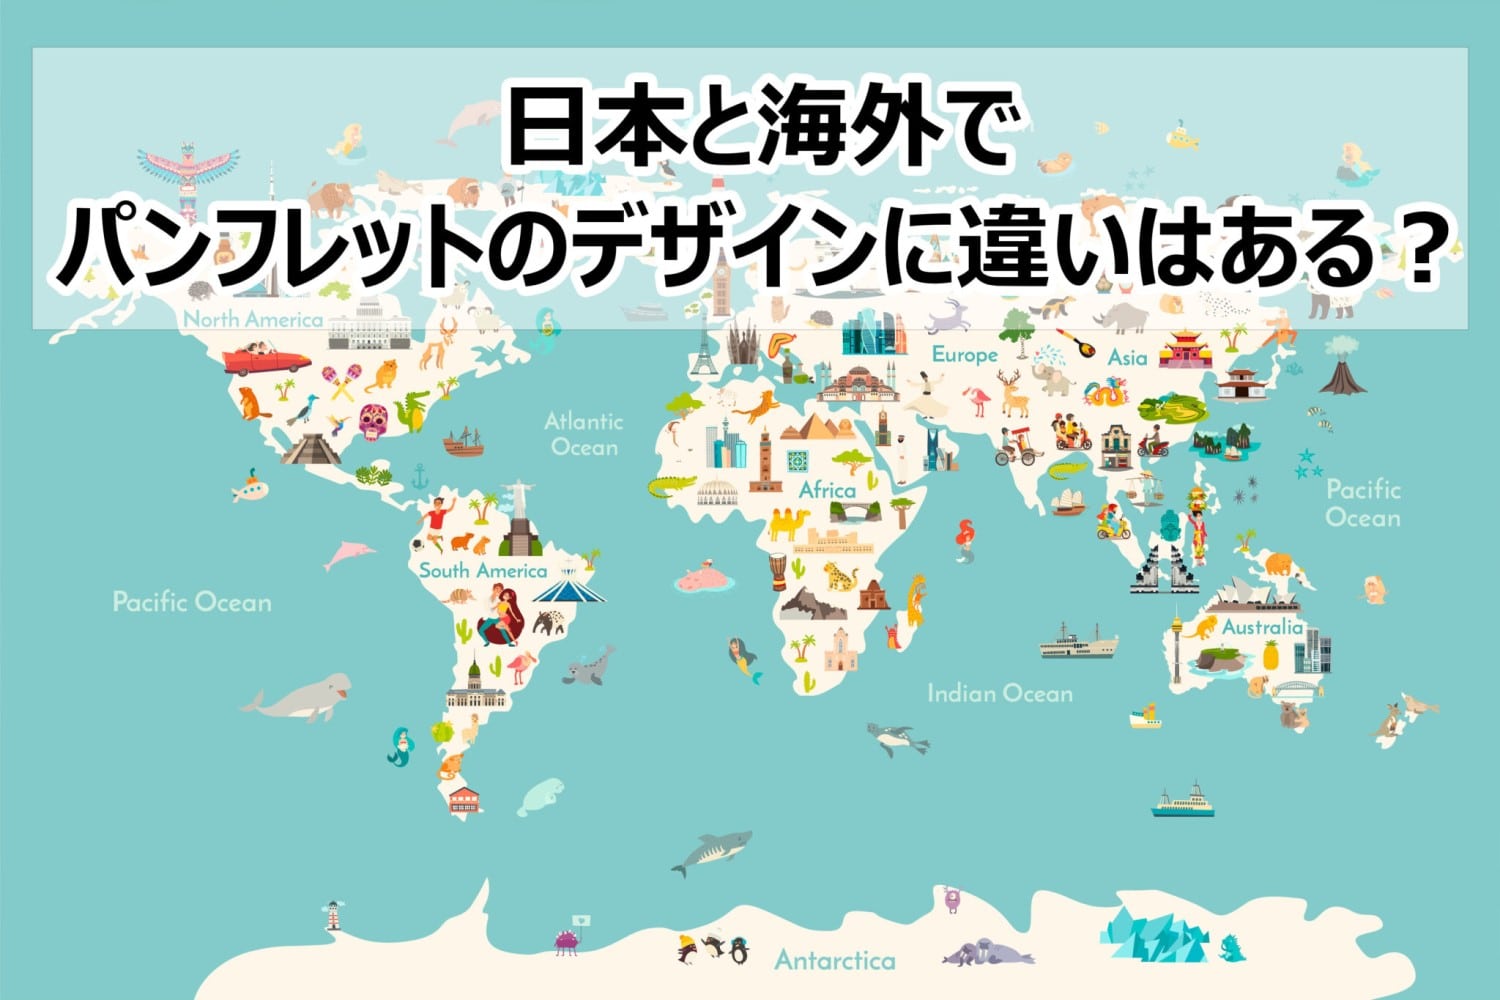 日本と海外でパンフレットのデザインに違いはある？